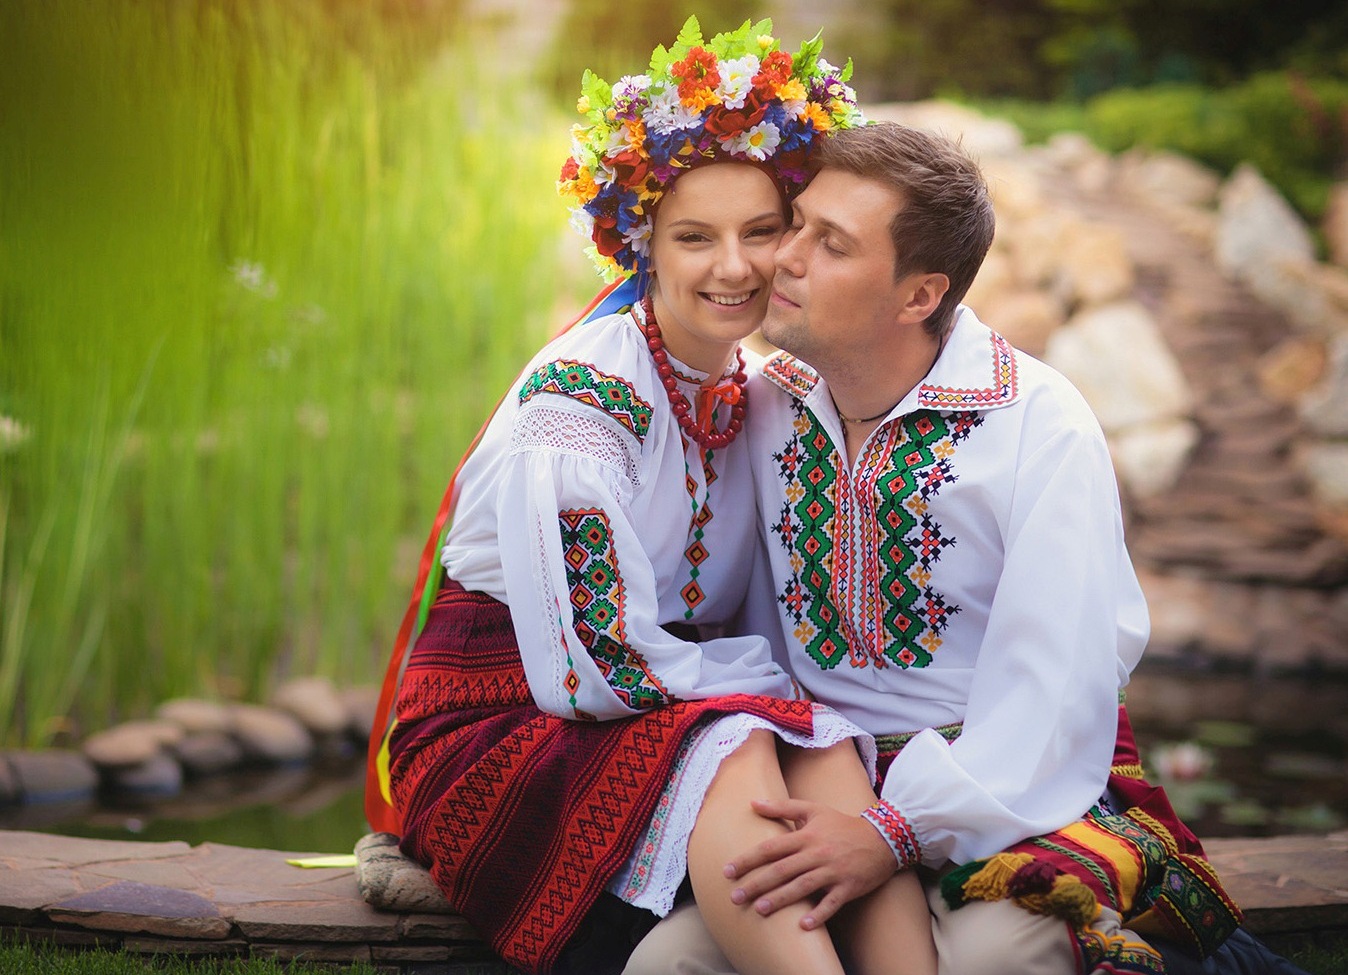 Северные украинцы. Свадебный наряд украинцев. Мужчина и женщина славяне. Парень и девушка в русских народных костюмах.